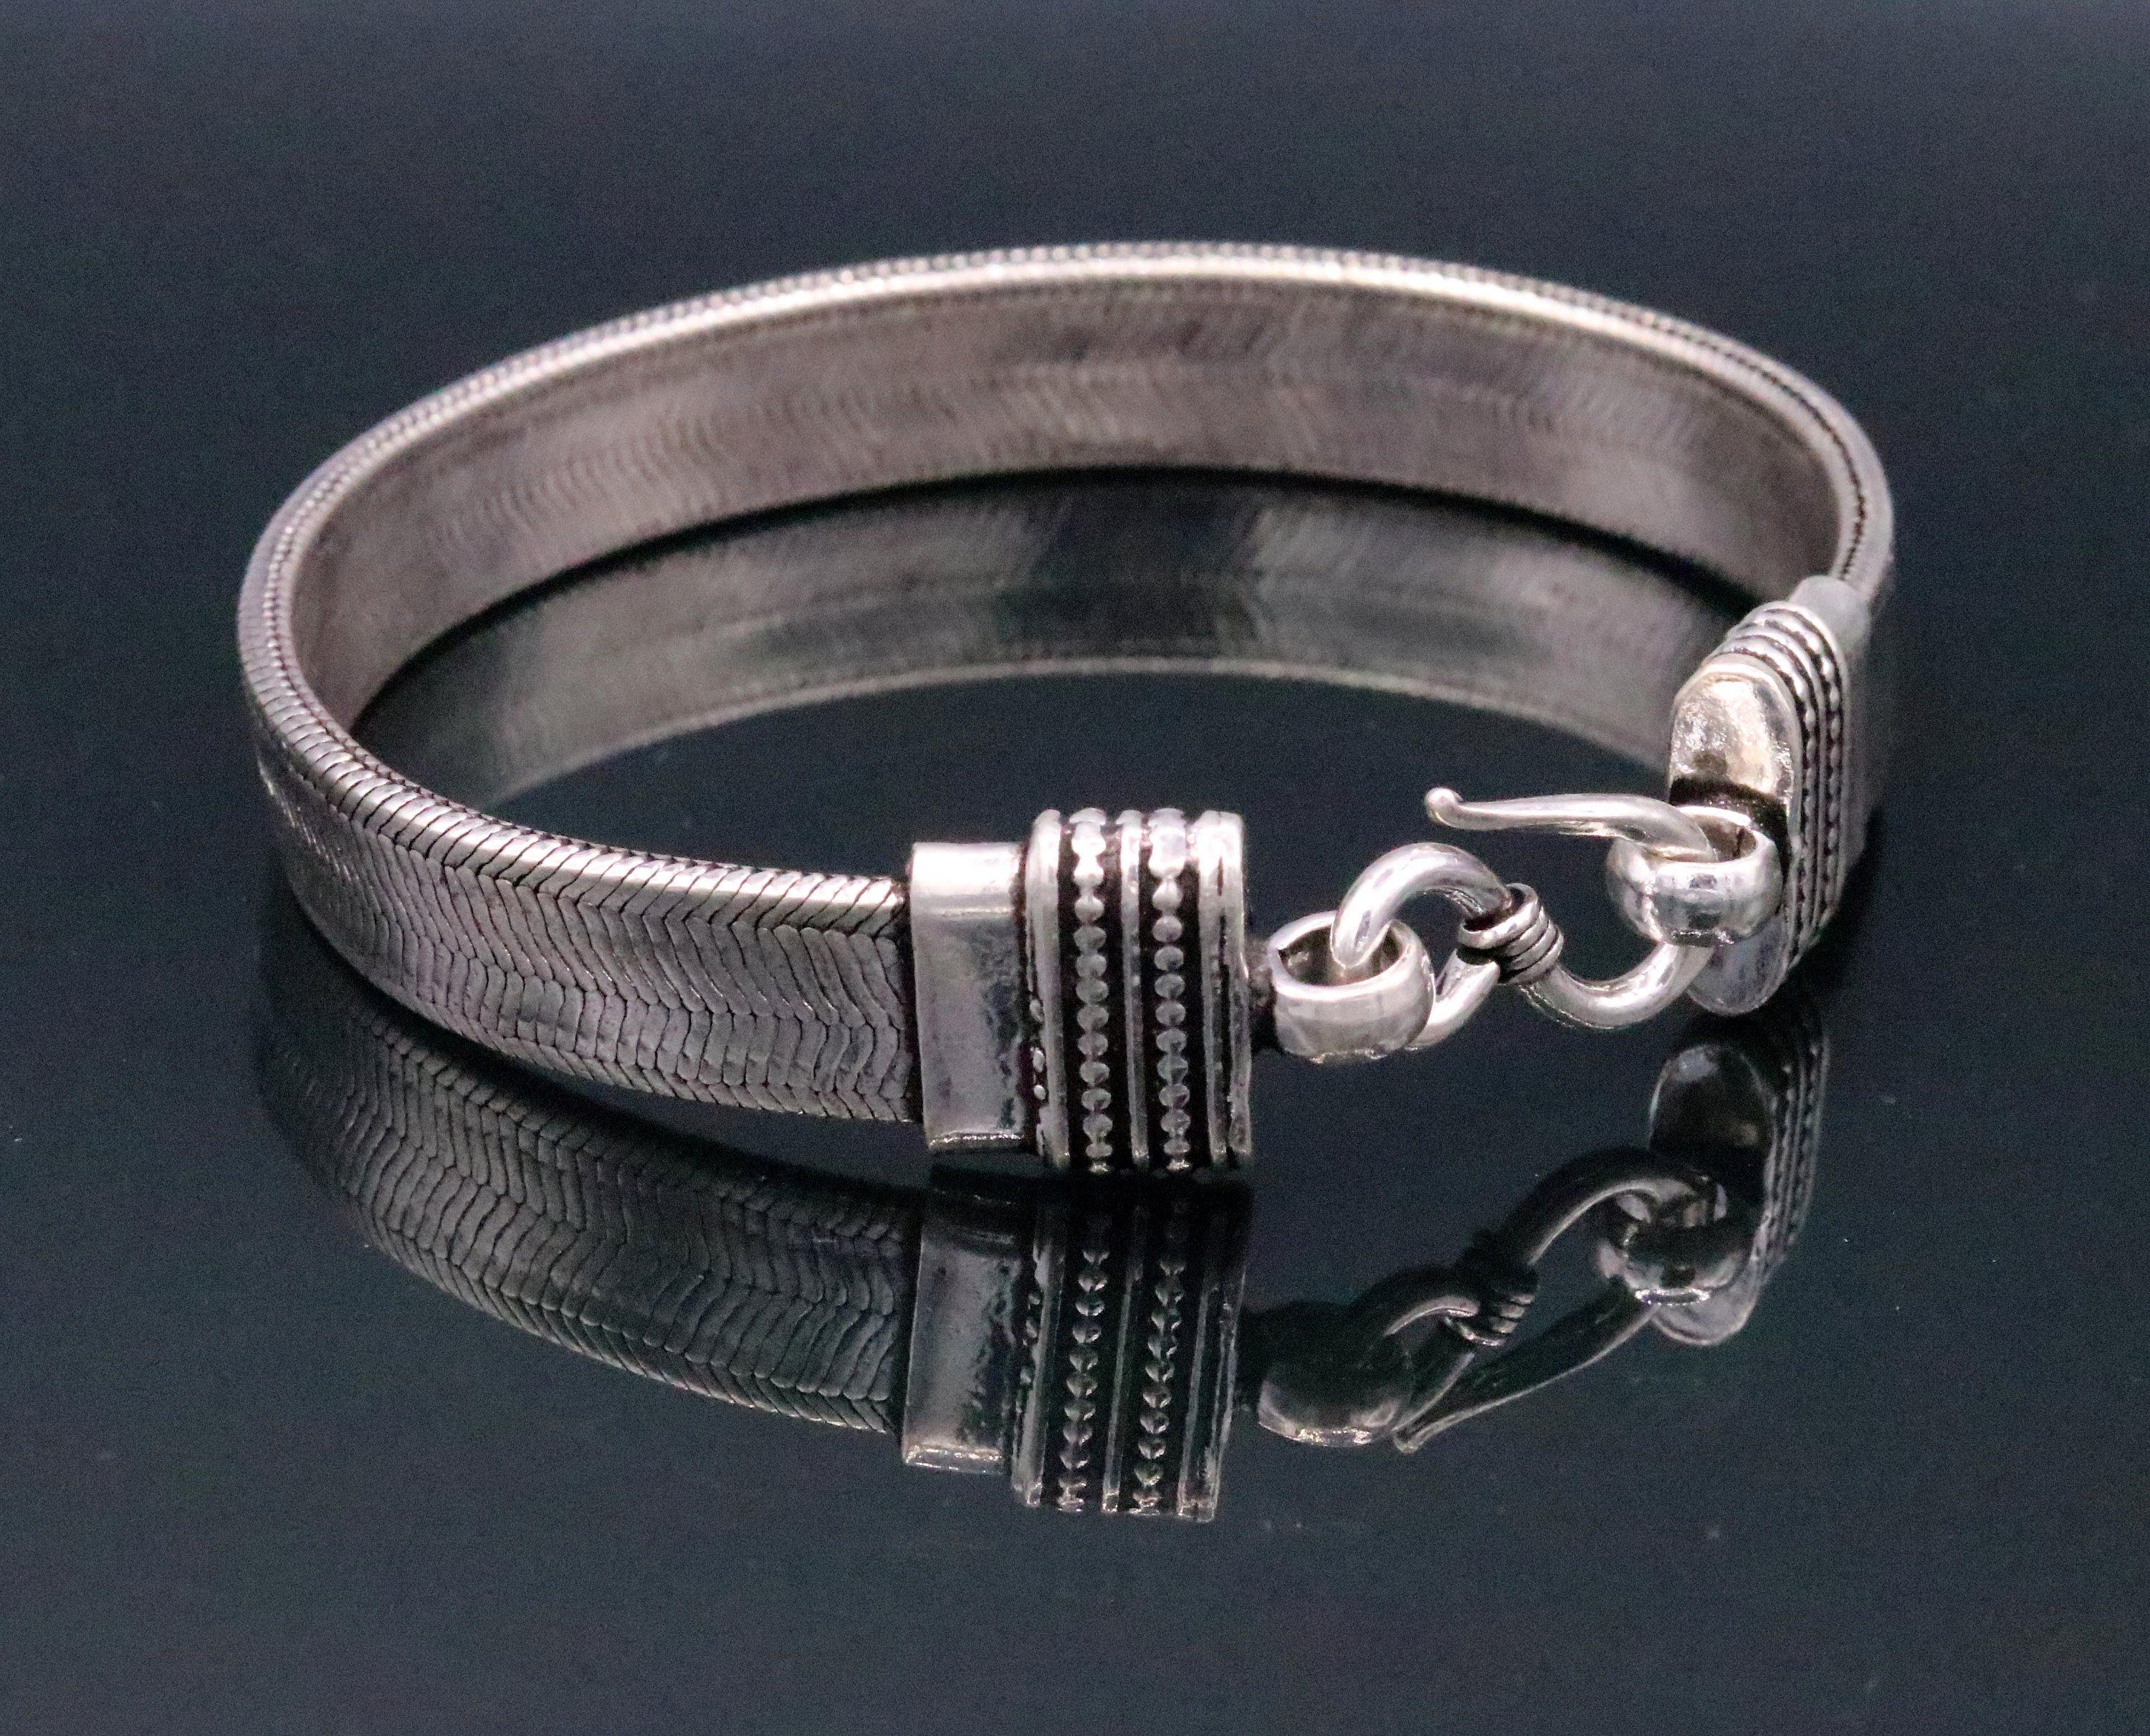 Tiara Foxtail Chain Bracelet in Sterling Silver